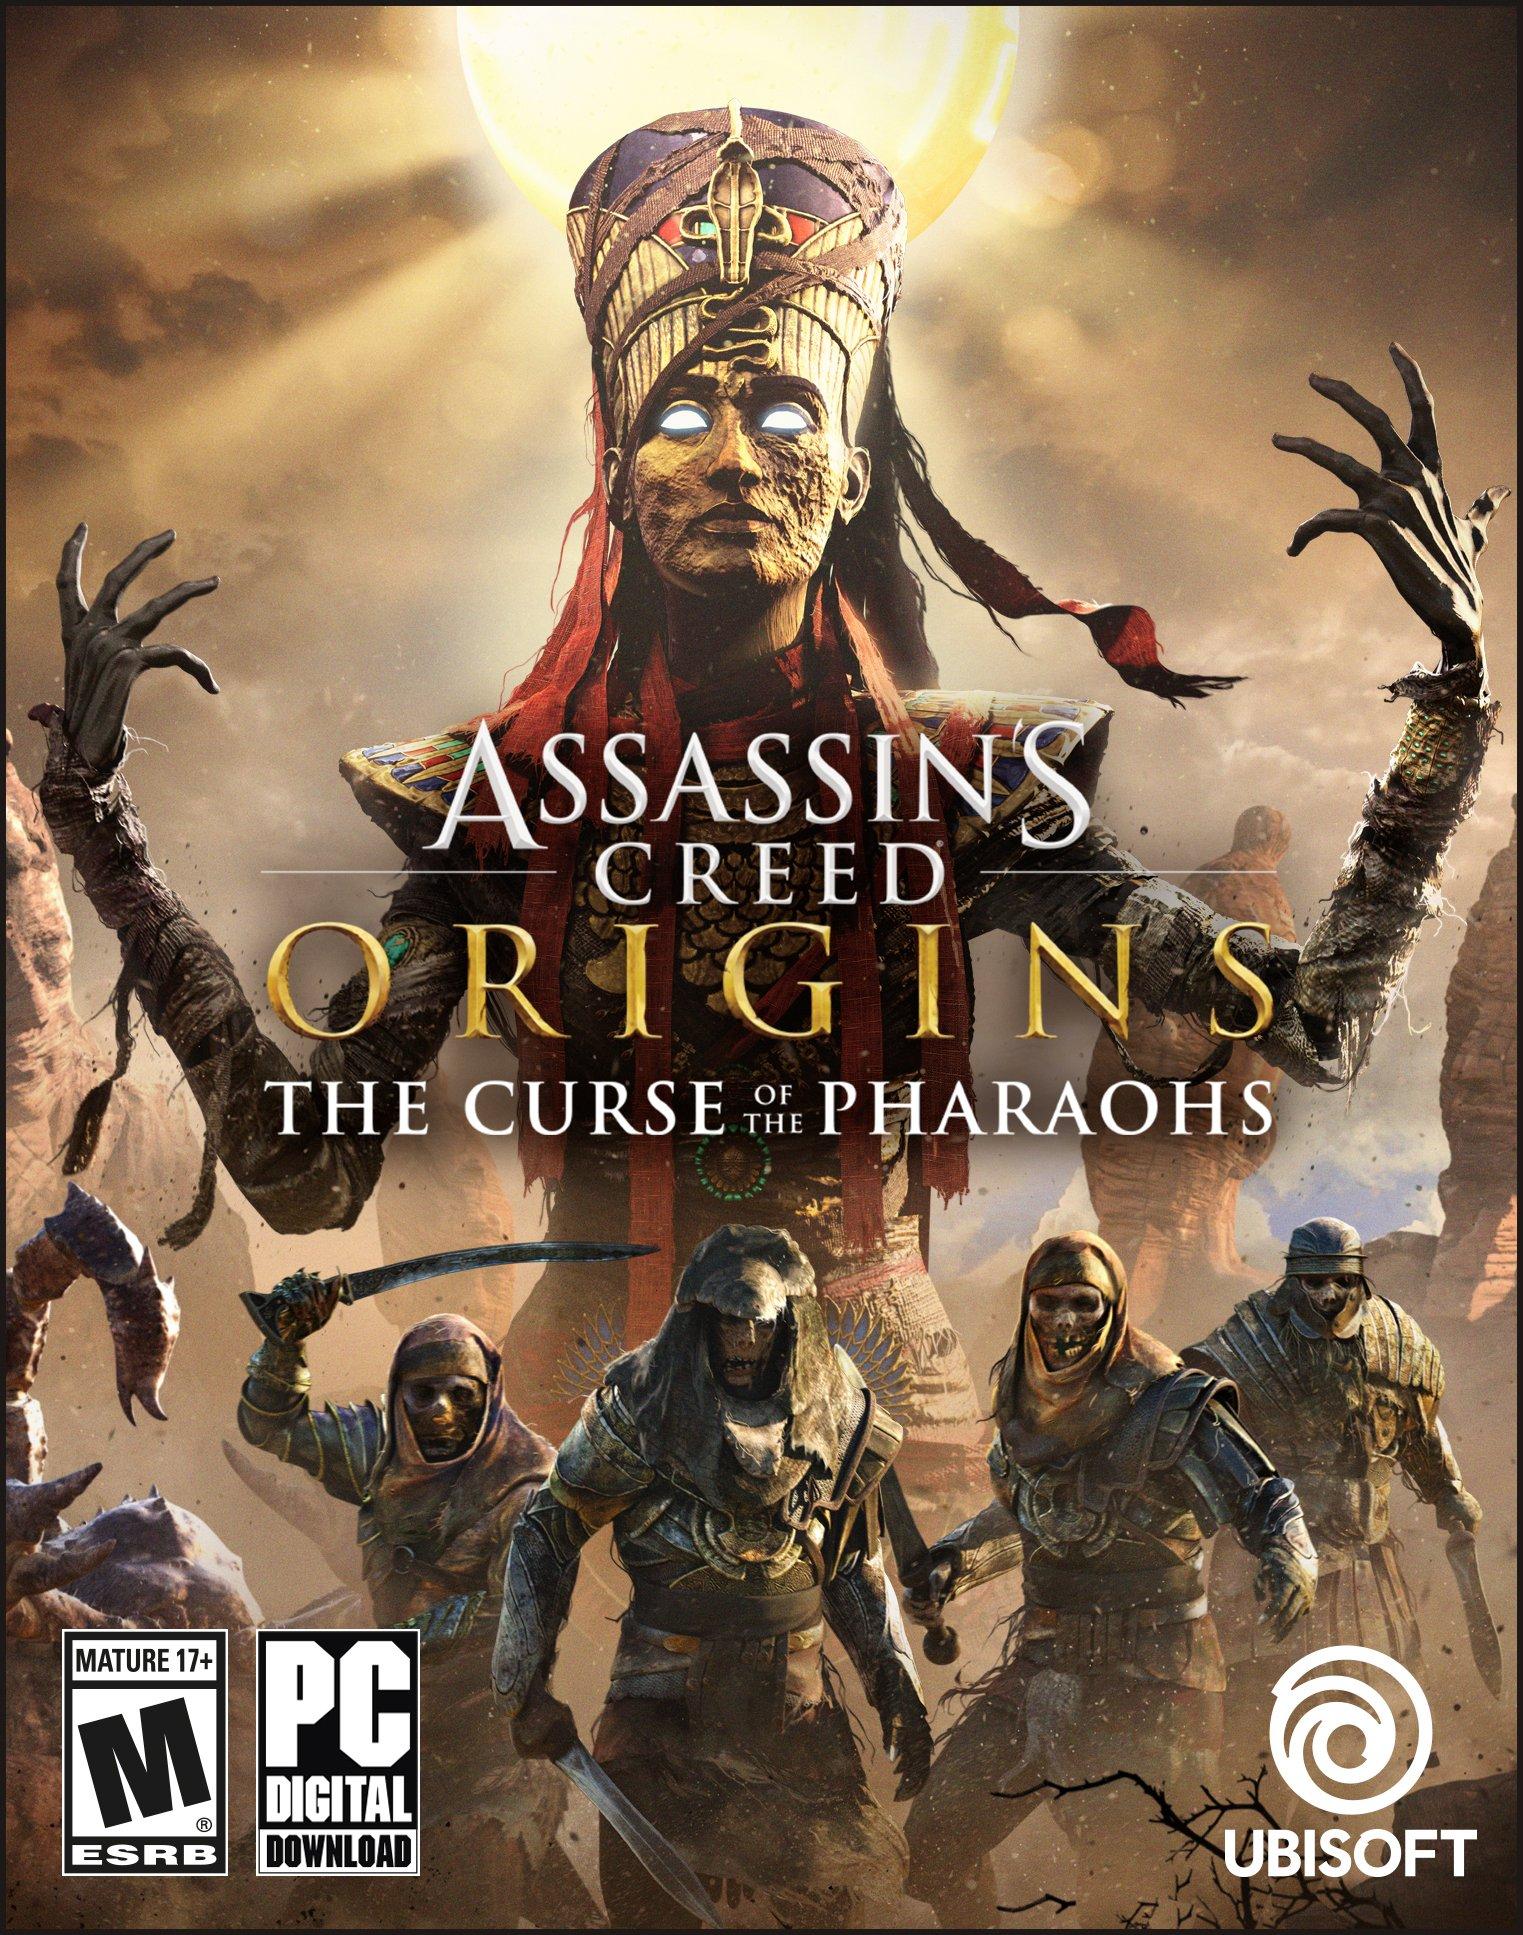 Assassin origin gold. Assassin's Creed Origins the Curse of the Pharaohs. Assassins Creed the Curse of the Pharaohs. Assassin's Creed Origins Долина царей. Proklyatiya Faraonov Assassin's Creed Origins.